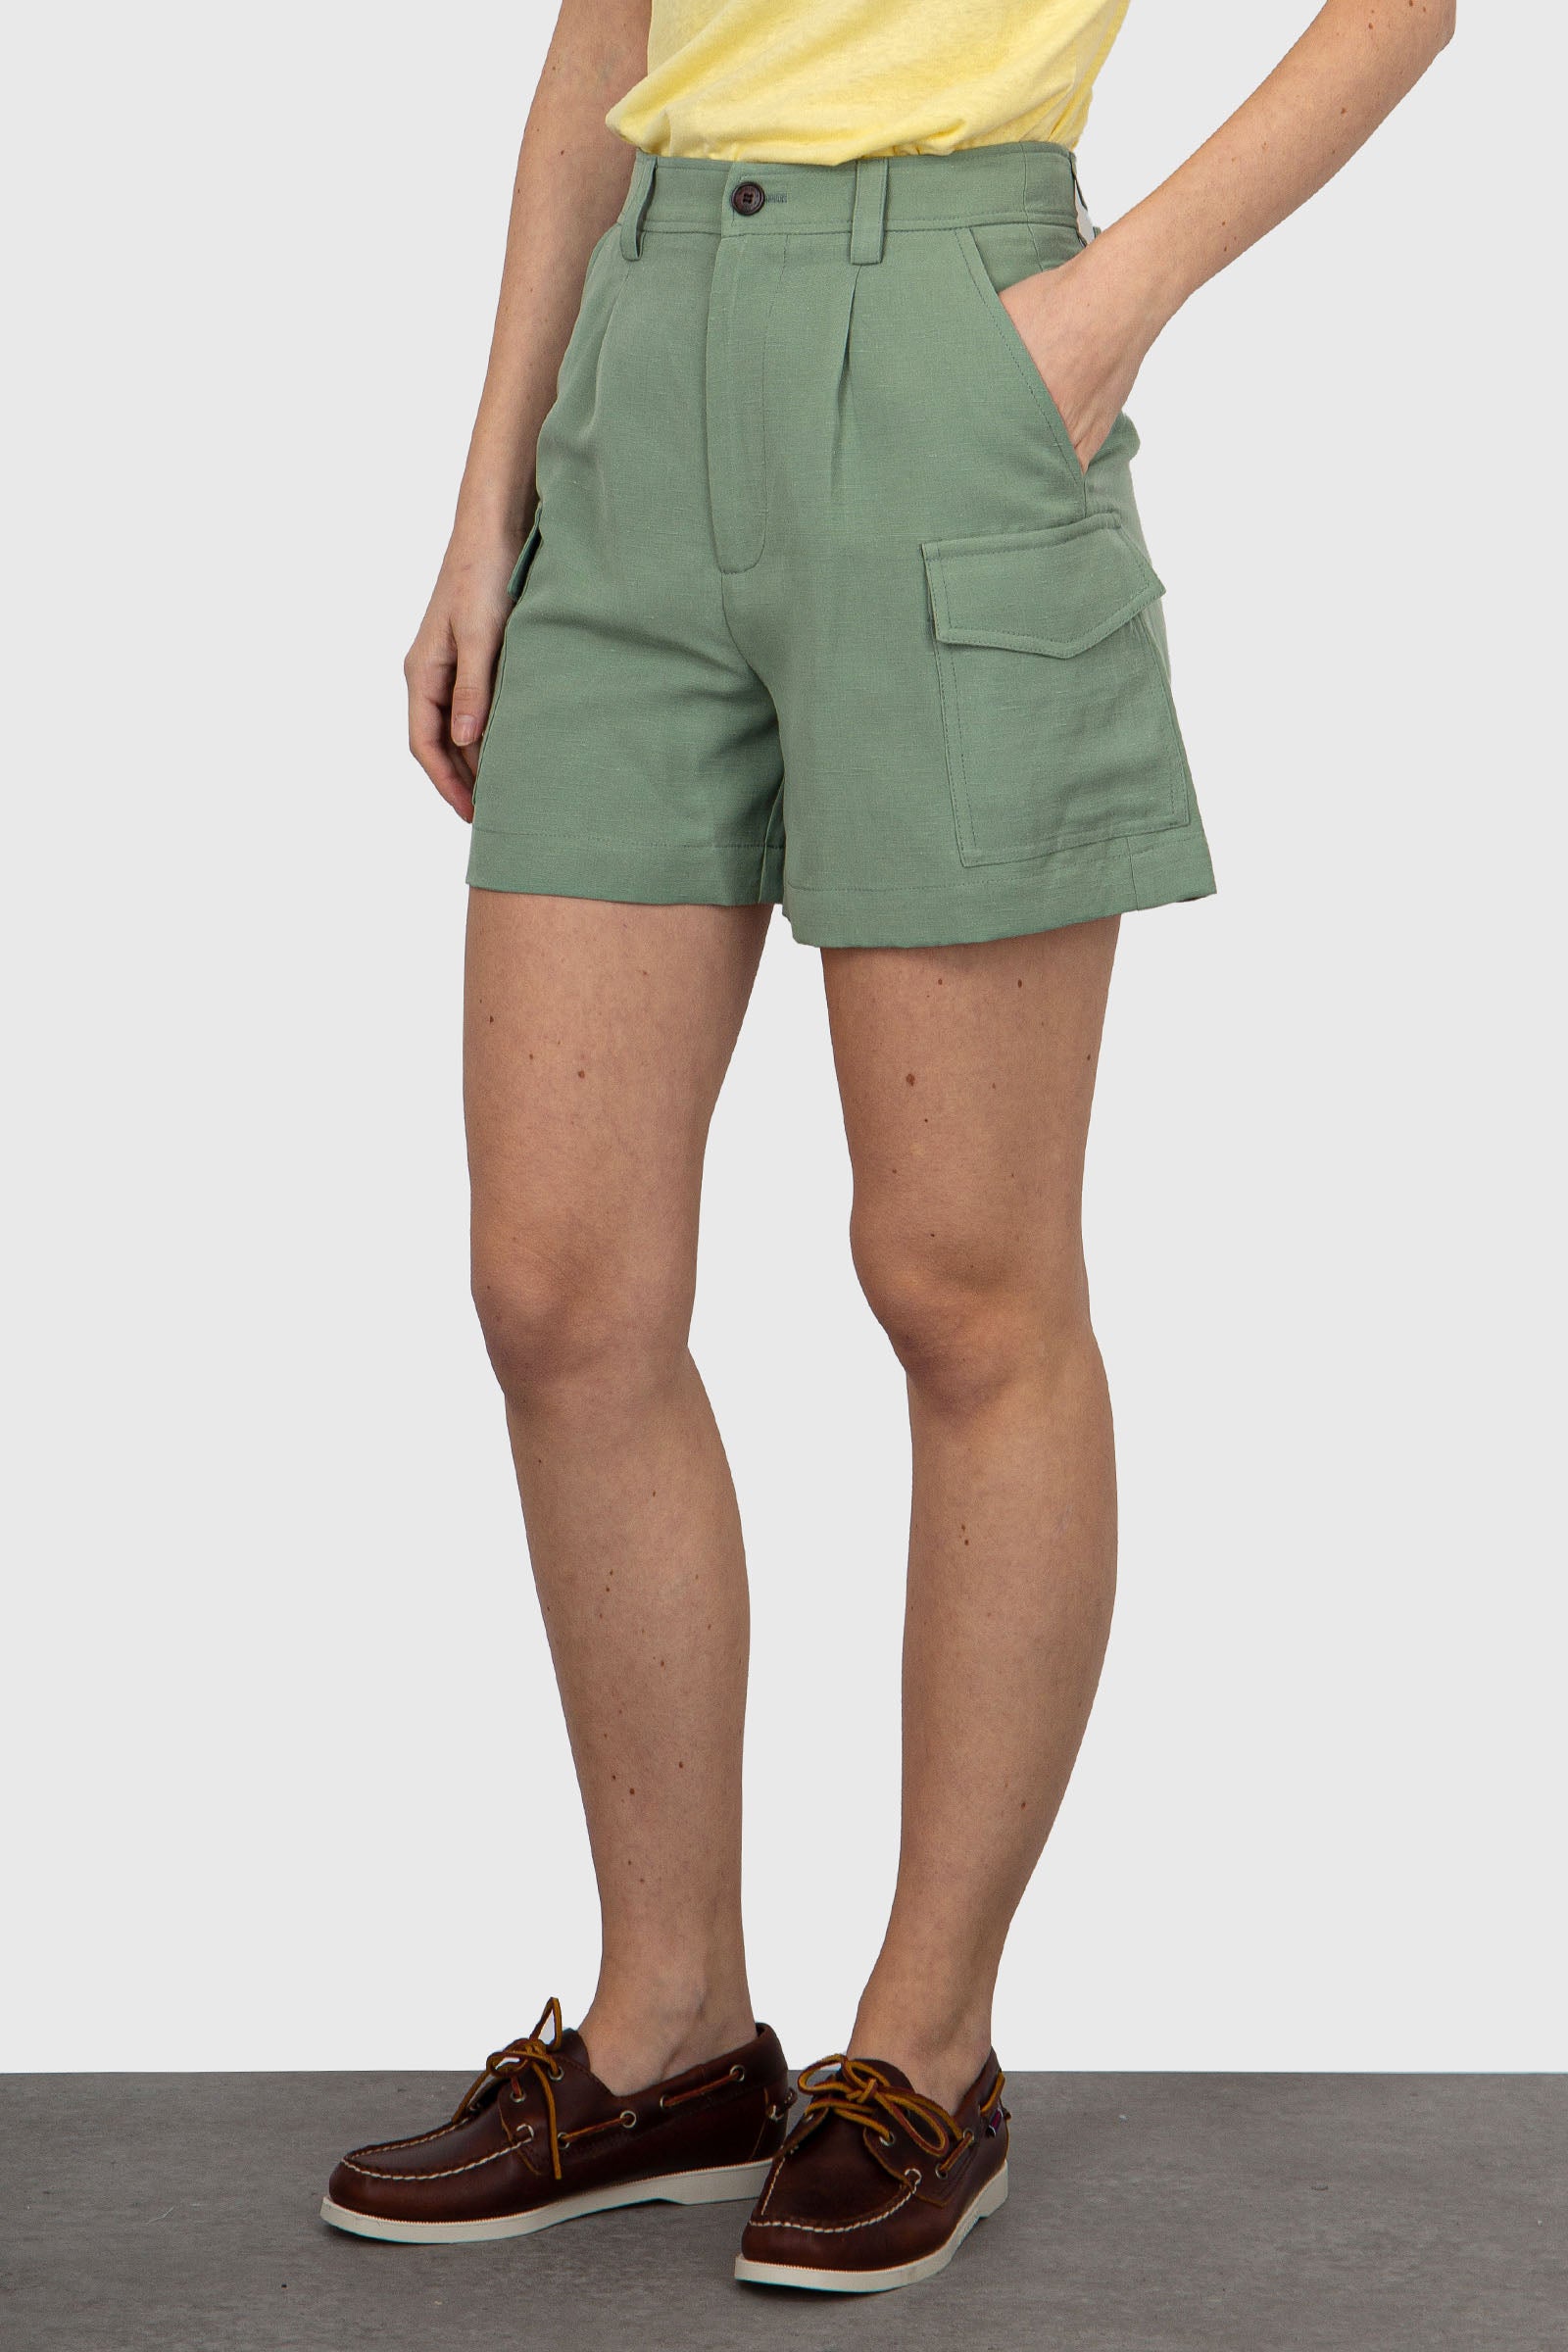 Woolrich Mint Green Linen/Viscose Shorts - 1